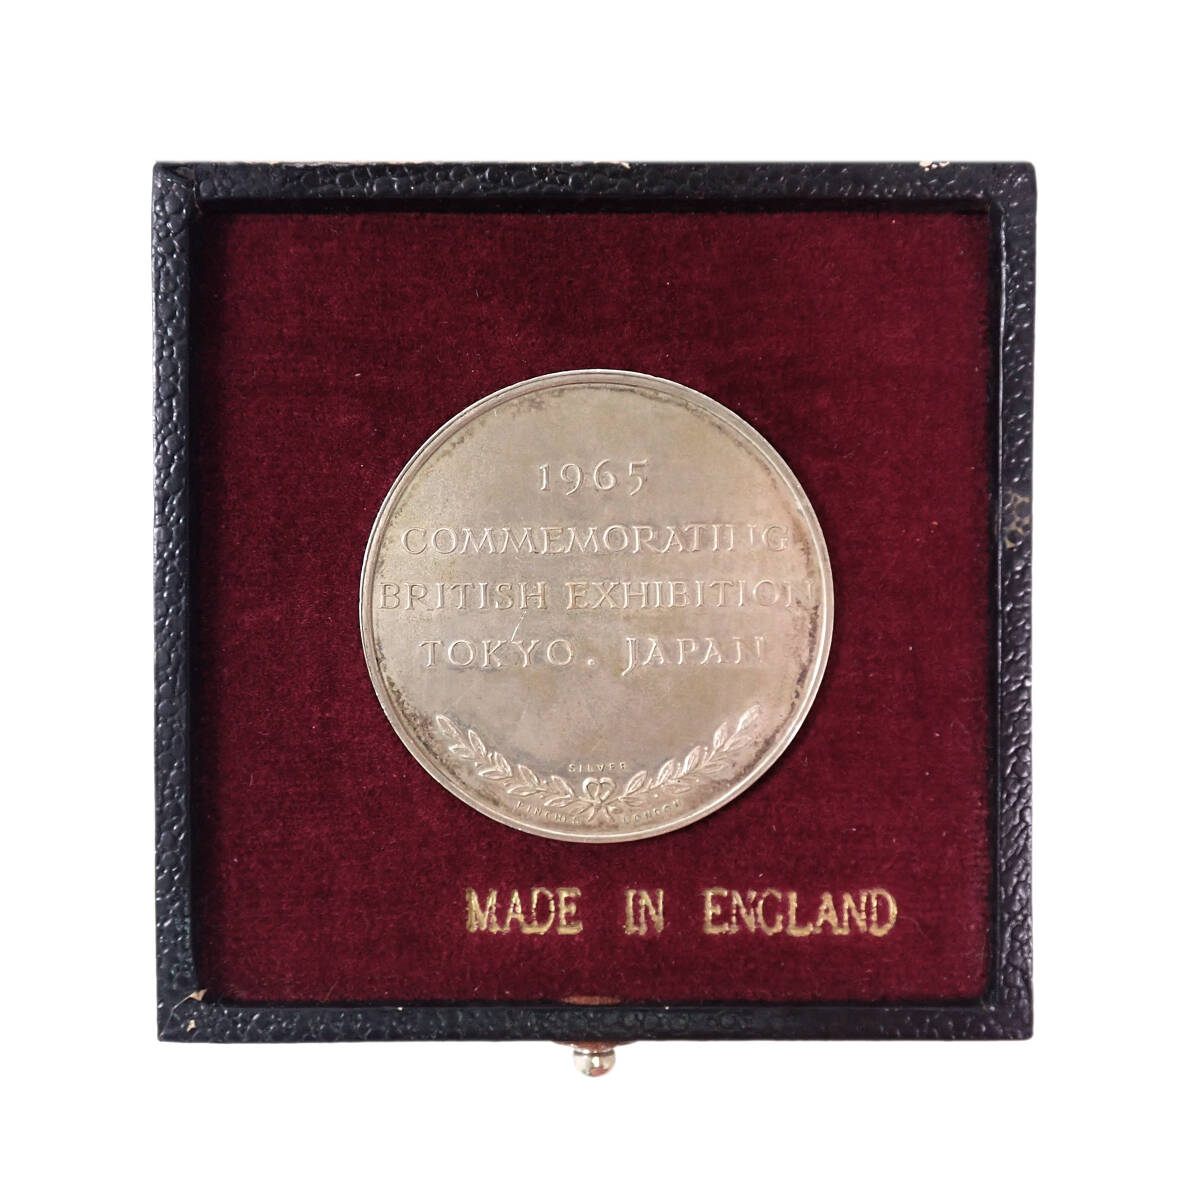 1965年 東京・英国博覧会記念 ブリタニア座像 銀メダル COMMEMORATING BRITISH EXHIBITION 1965 TOKYO JAPAN 当時物_画像4